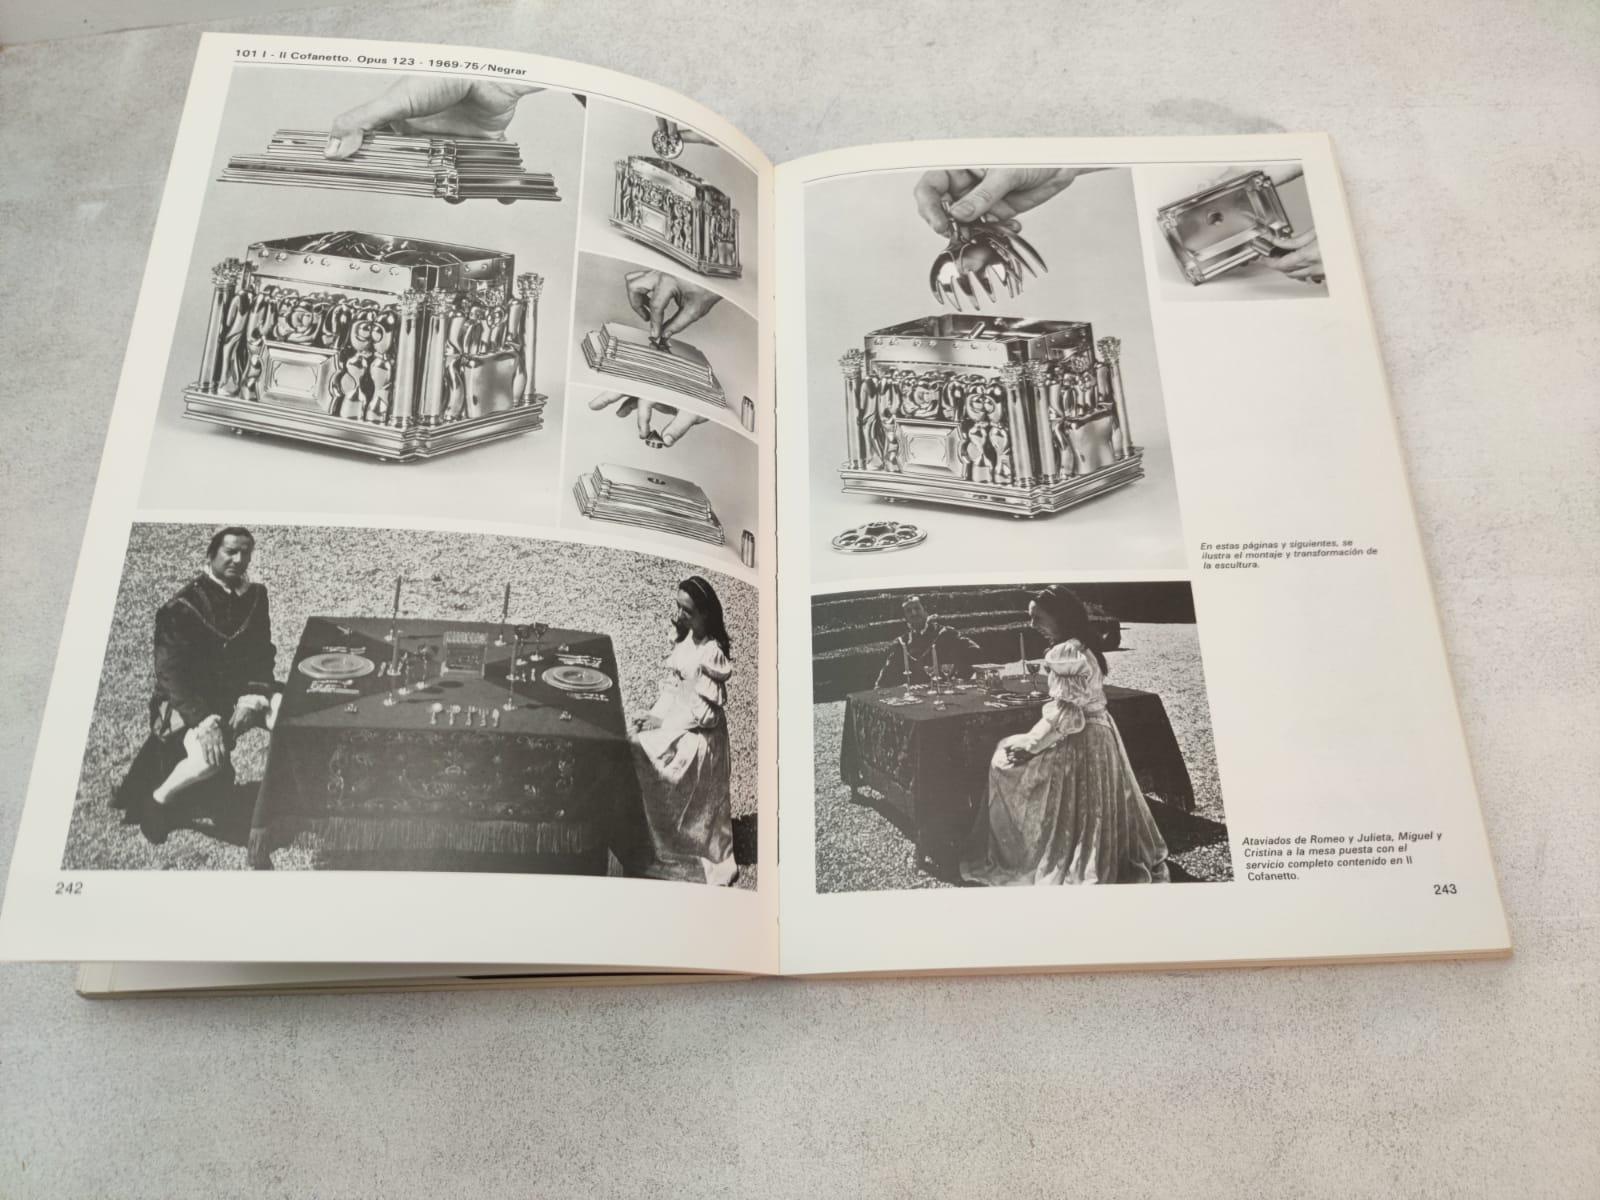 Paper Exclusive Book Antológica Berrocal 1955-84 Sculptures & Work of Miguel Berrocal